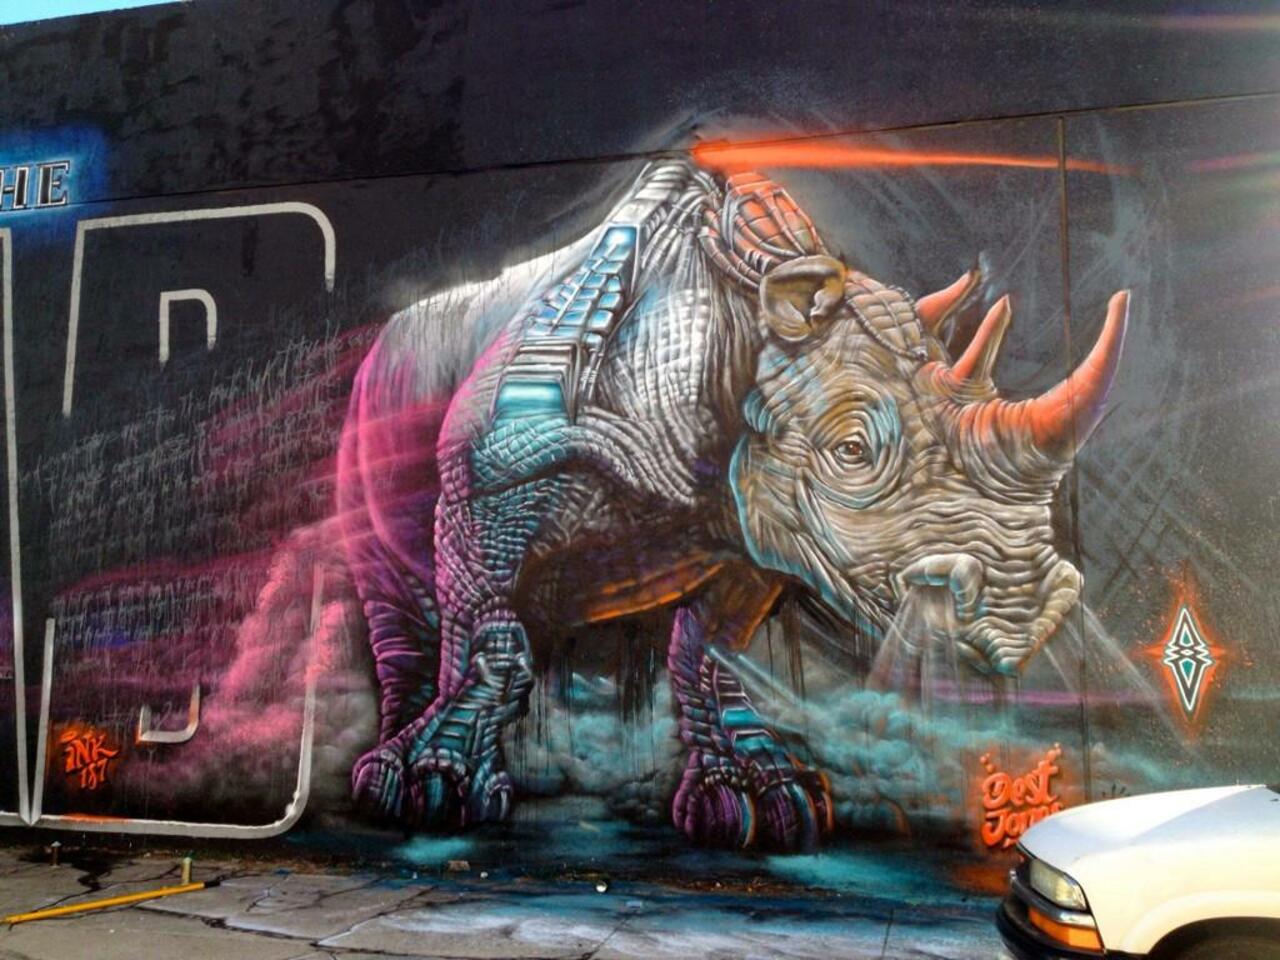 “@GoogleStreetArt: Incredible Street Art by artist Dest 

#art #mural #graffiti #streetart http://t.co/NJP8verPIK”